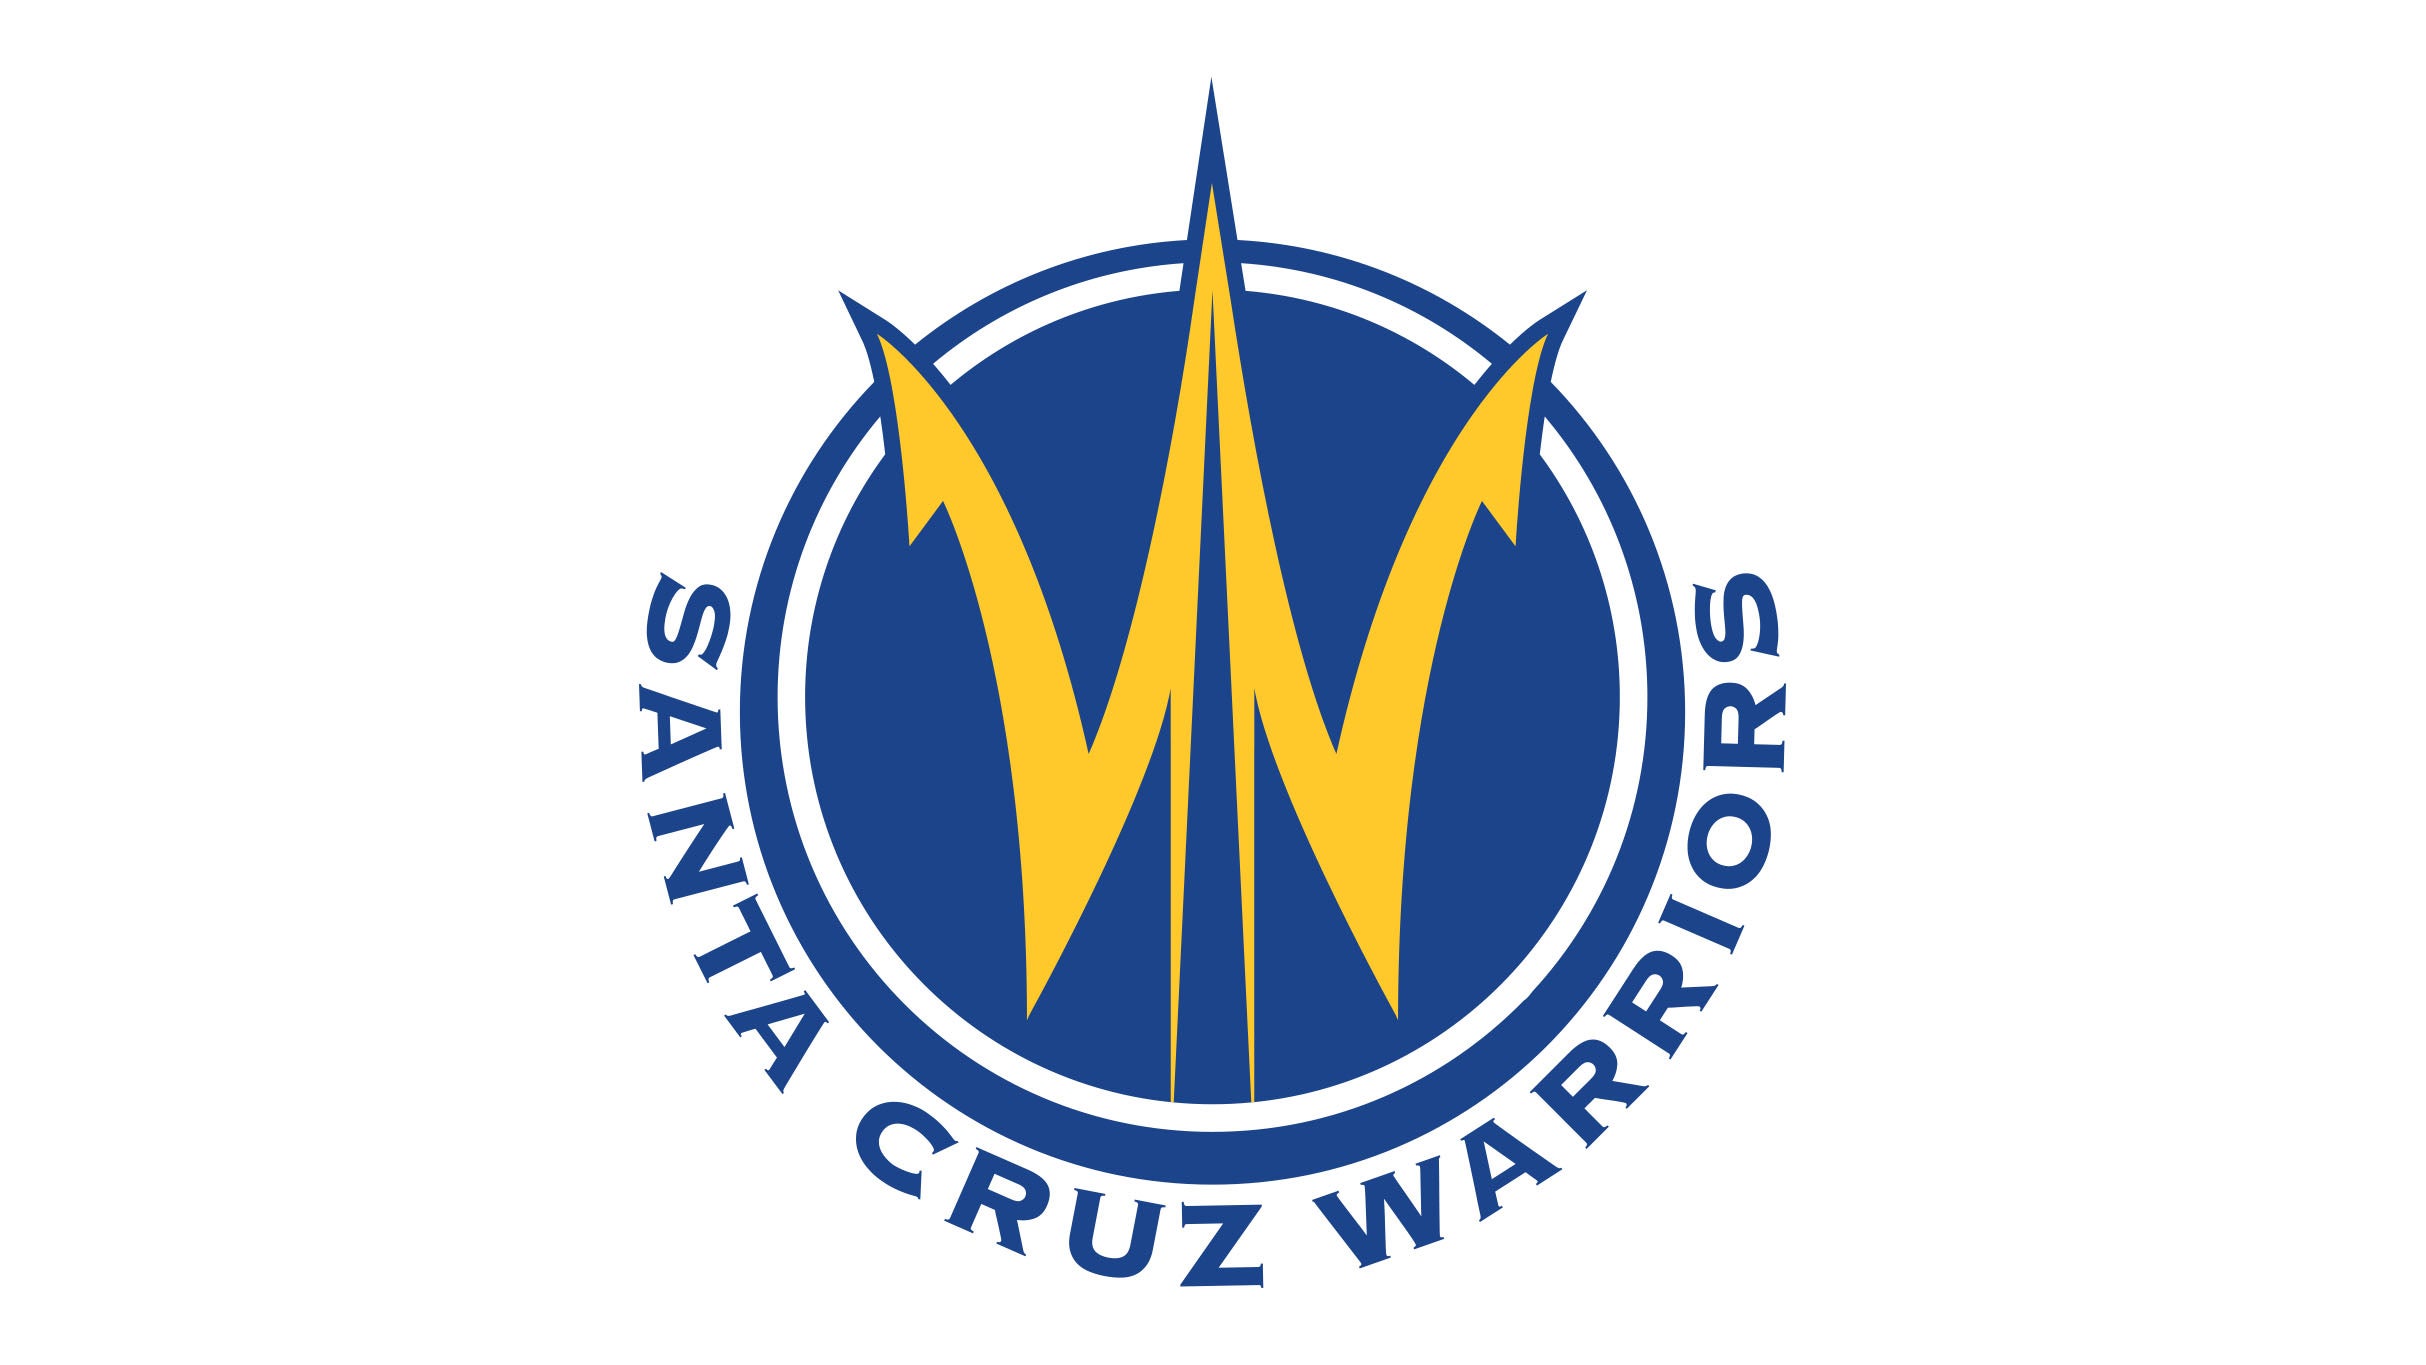 Santa Cruz Warriors vs. Texas Legends in Santa Cruz promo photo for Insider presale offer code